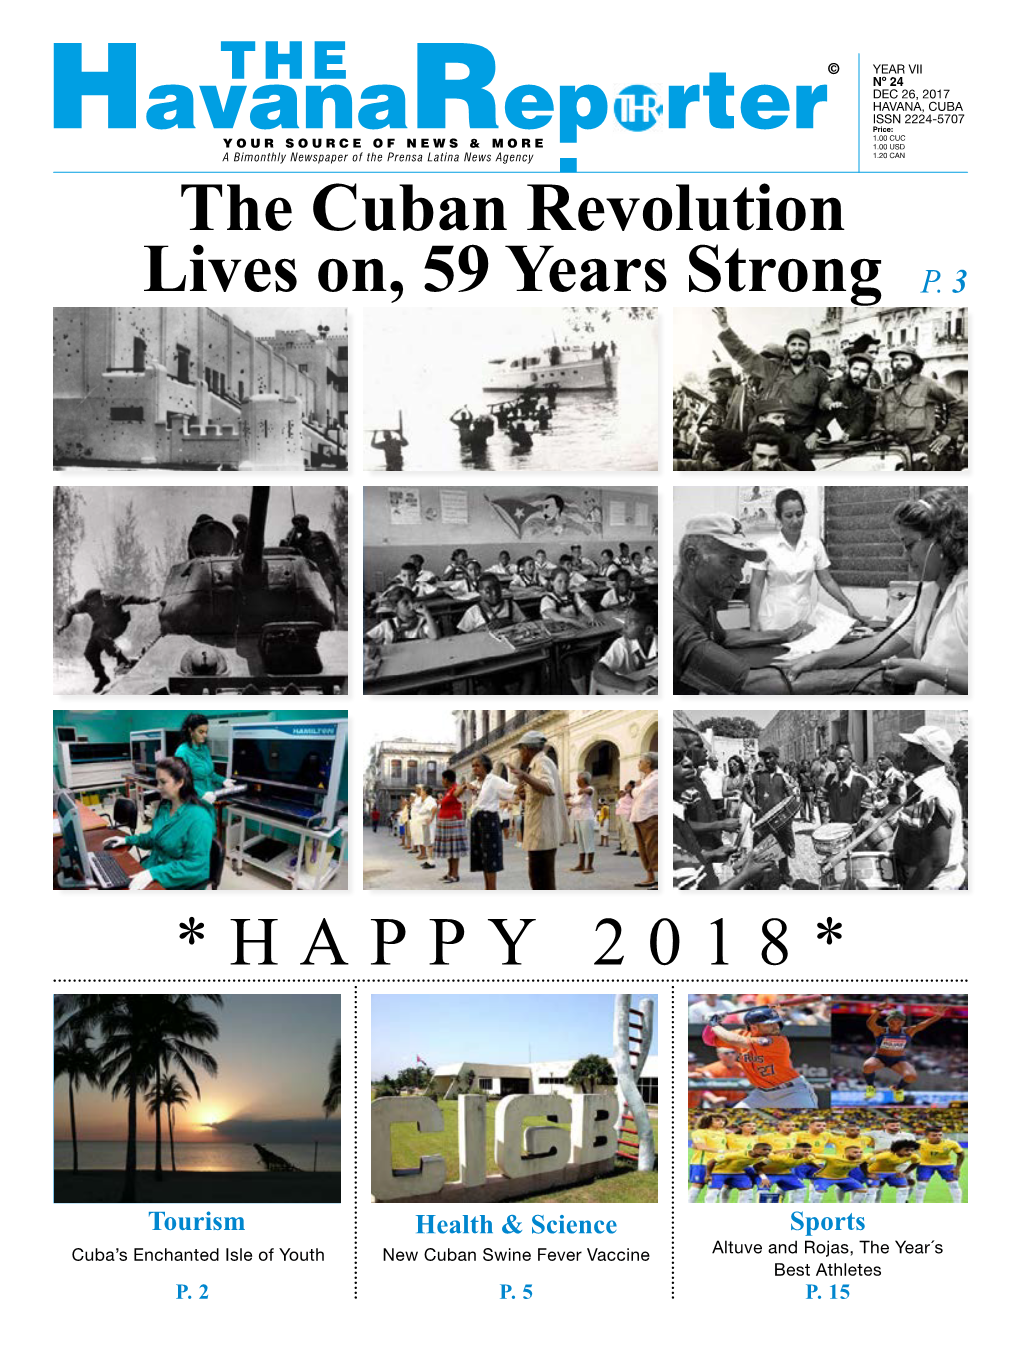 Havanareporter YEAR